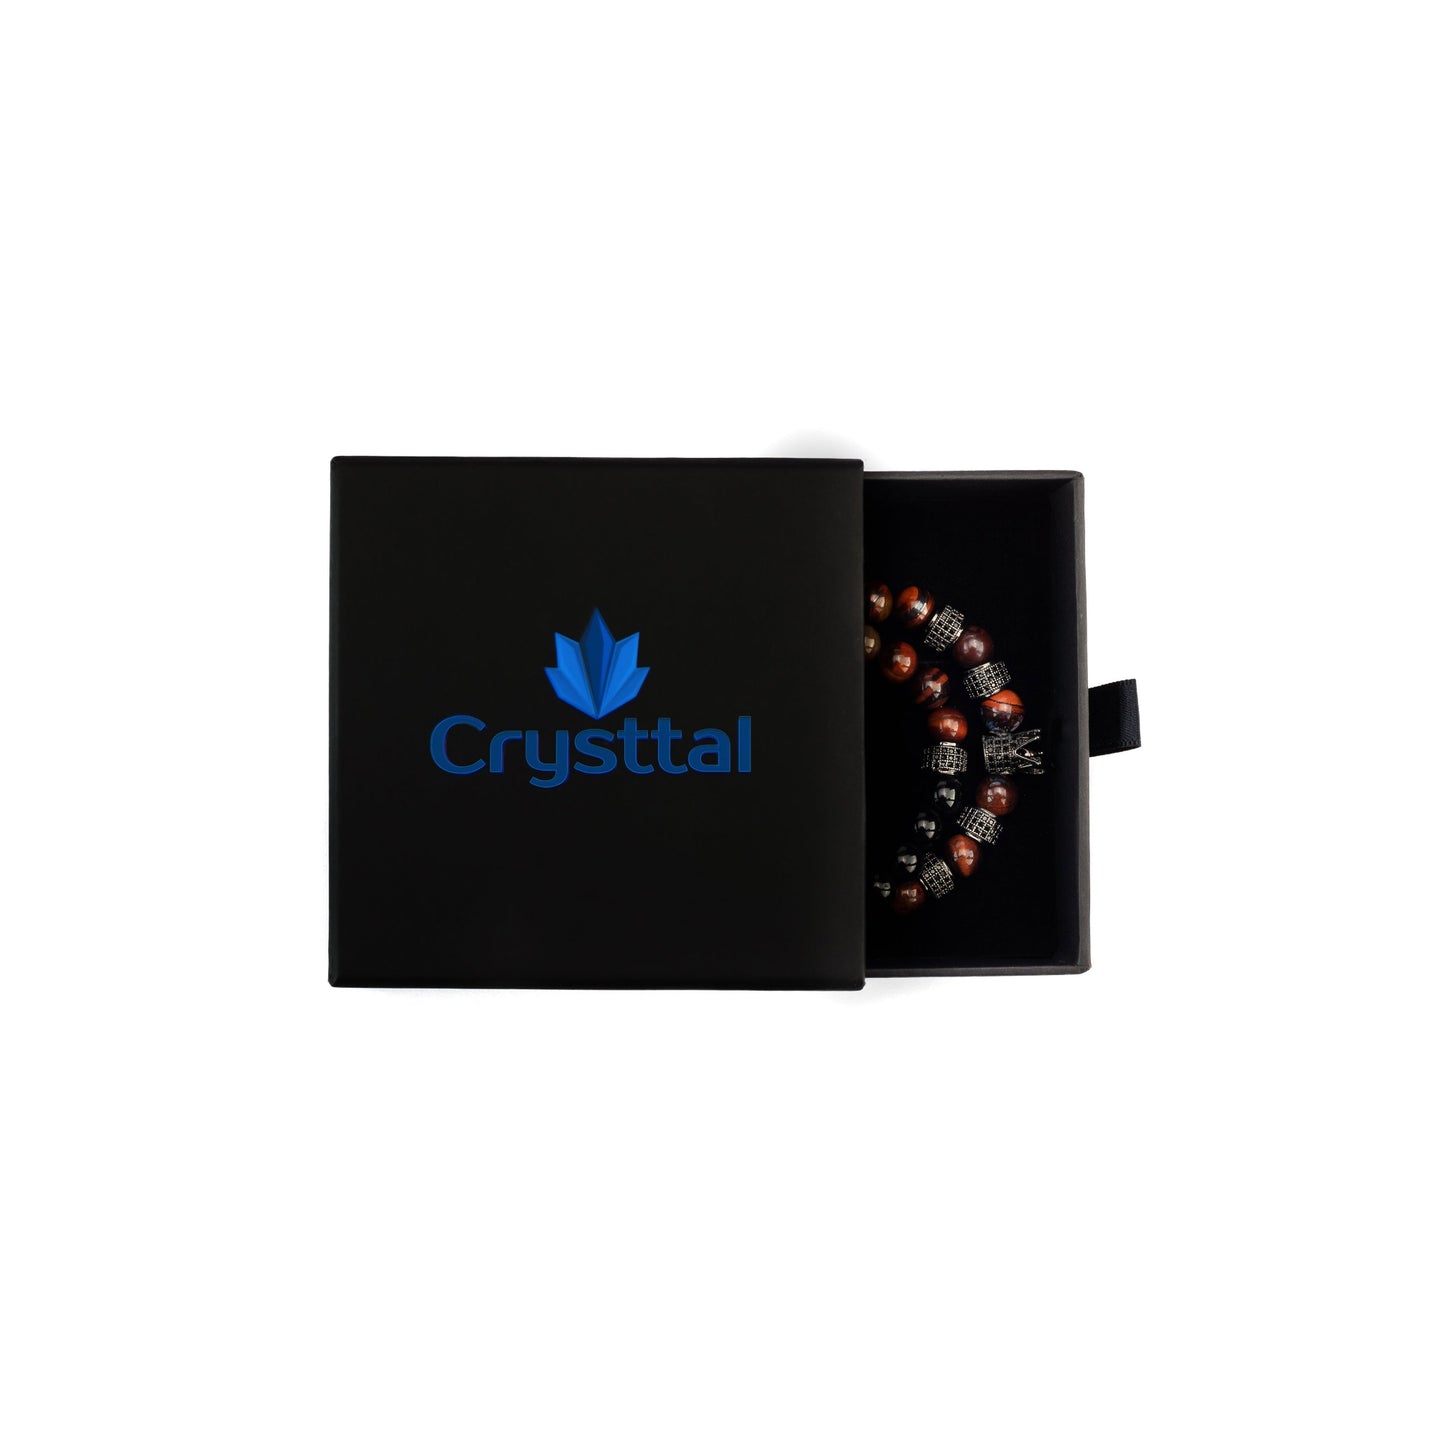 Tiger's Eye Black Agate Crown Bracelet 2pcs Set in a Crysttal branded gift box